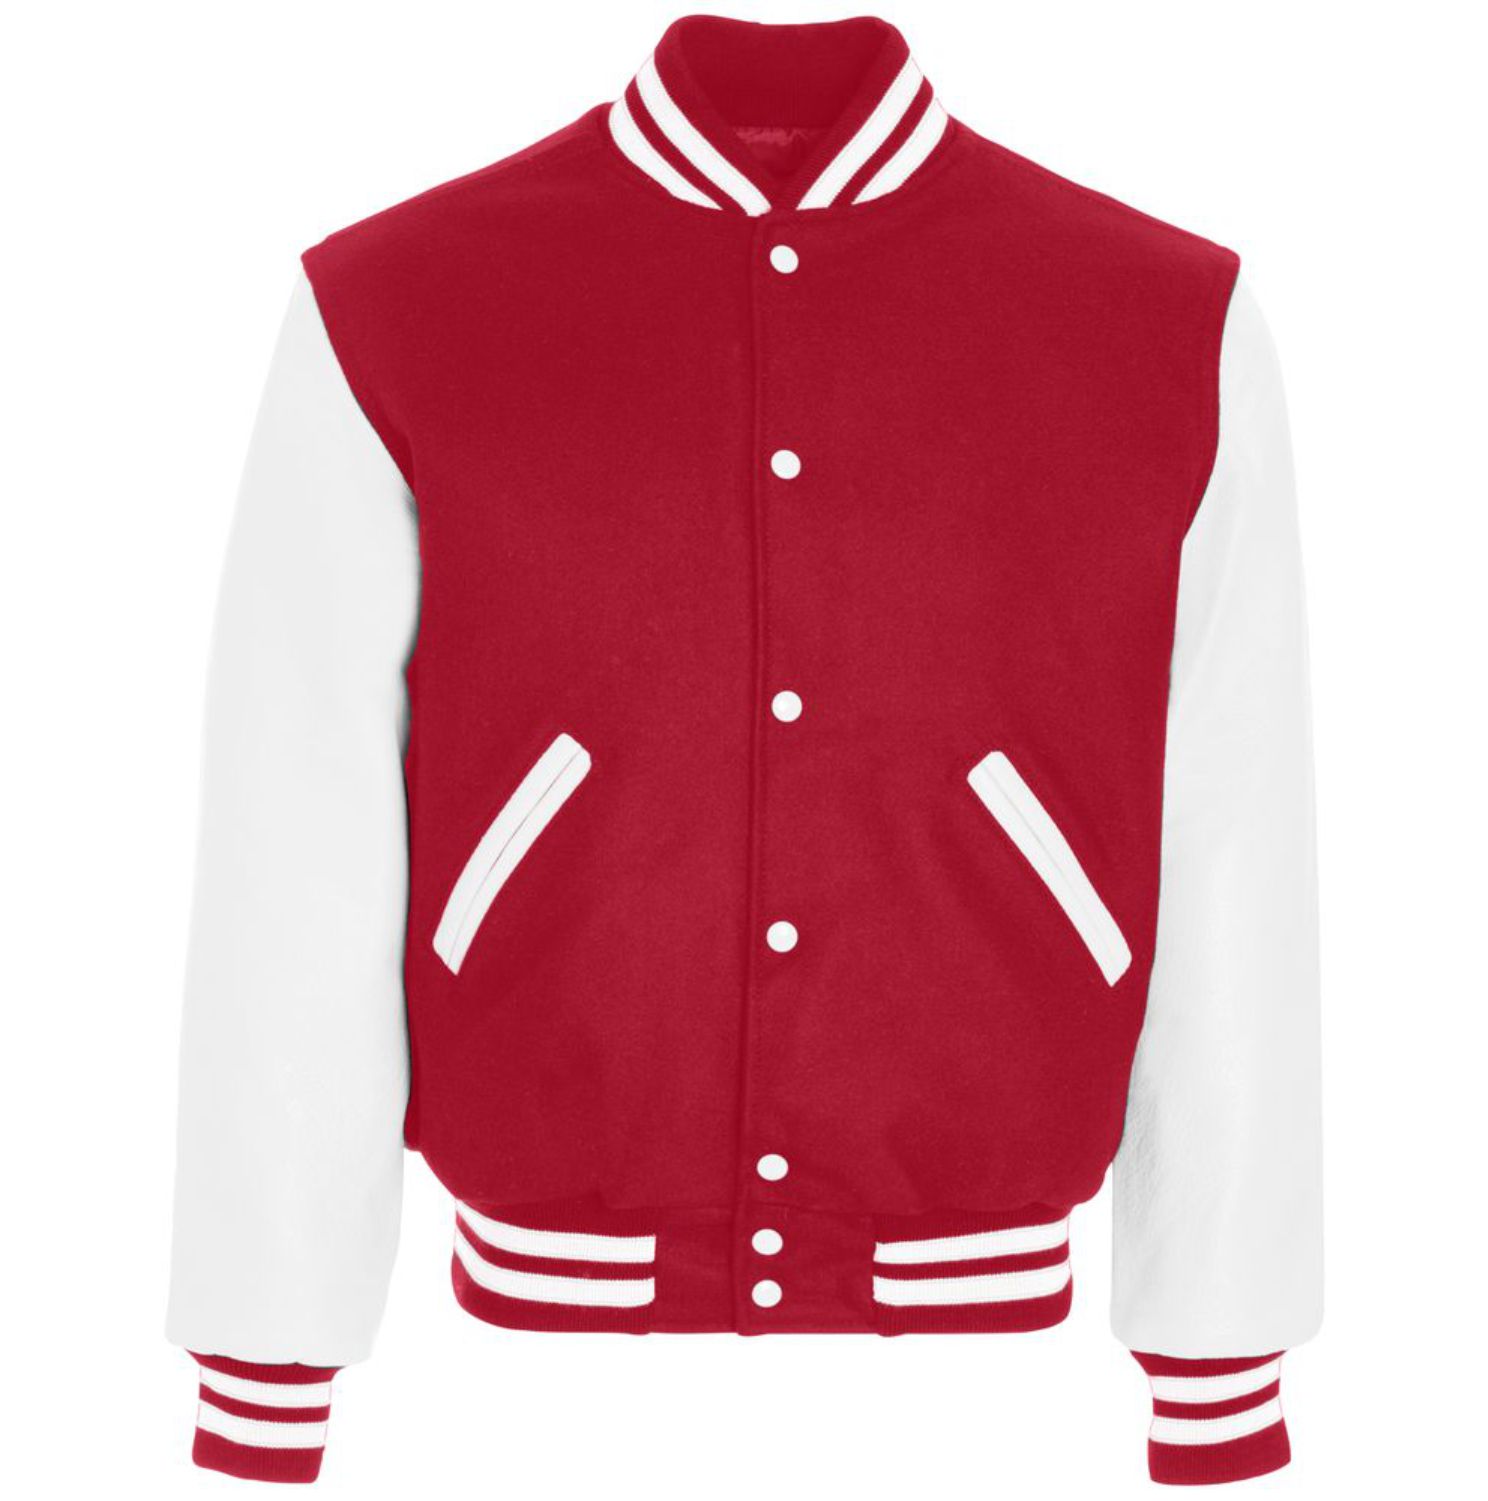 Holloway Varsity Jacket #224183 Scarlet / White